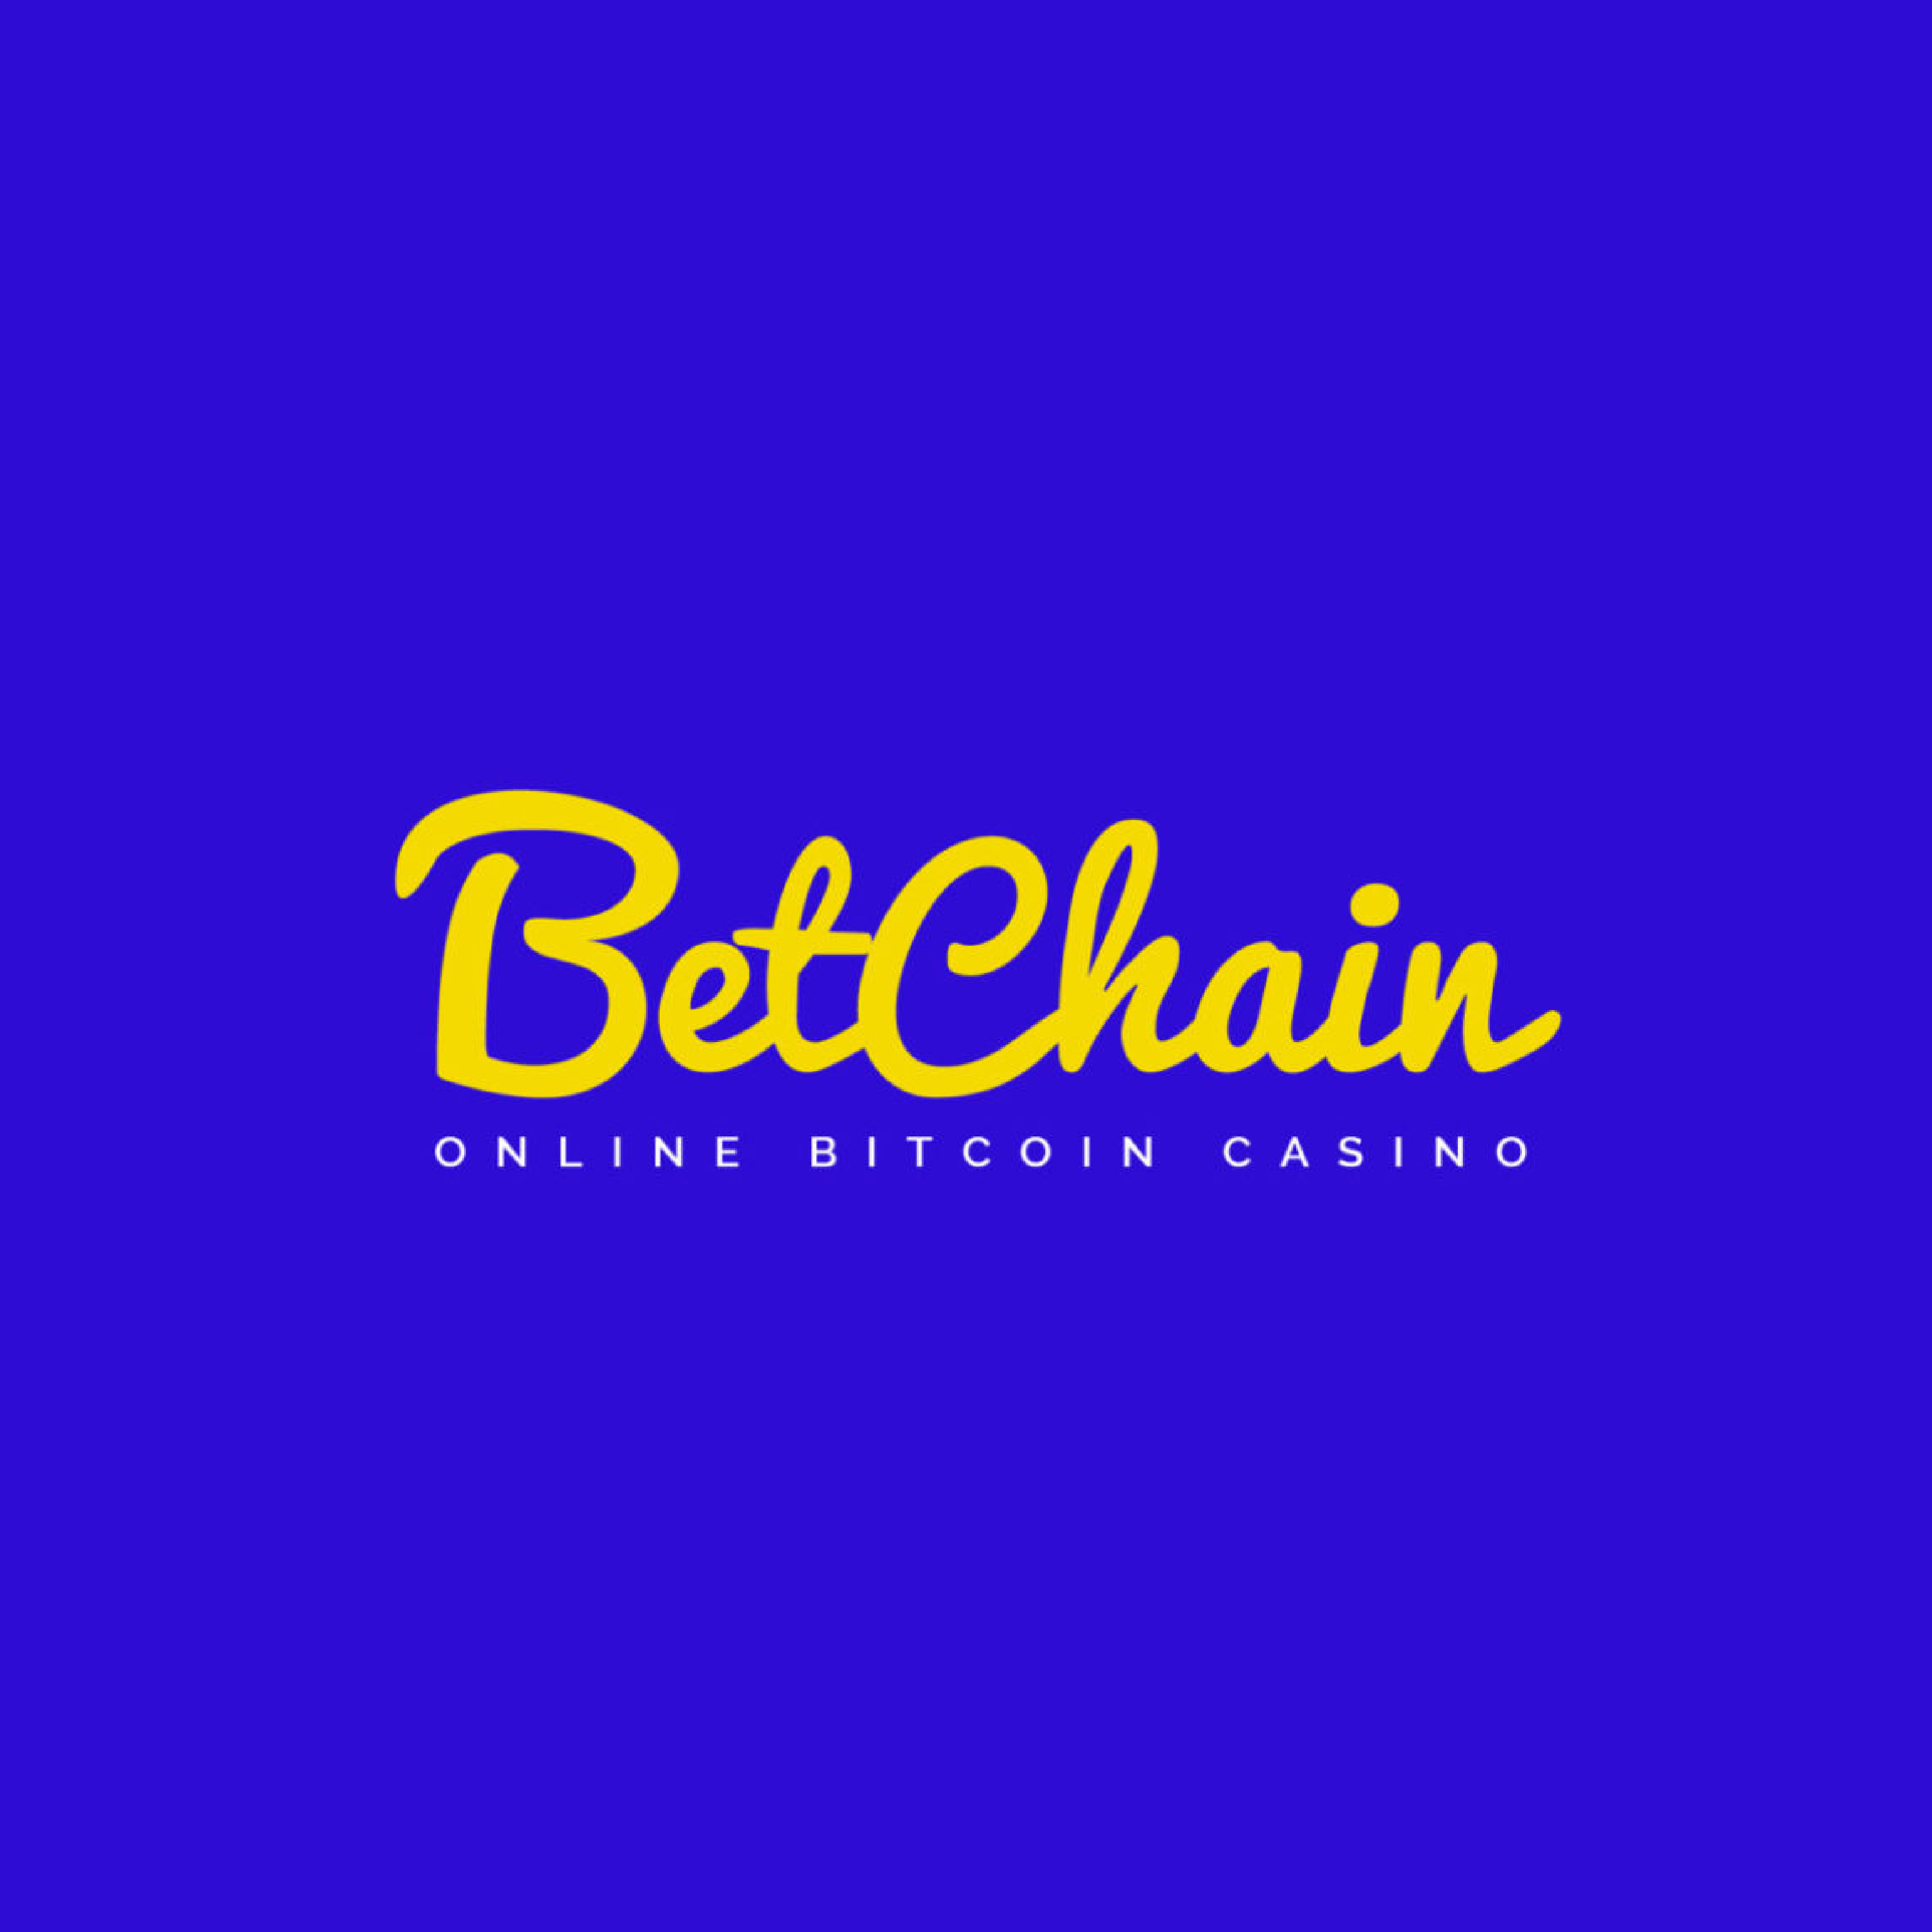 Free bitcoin casino play bitcoin slots